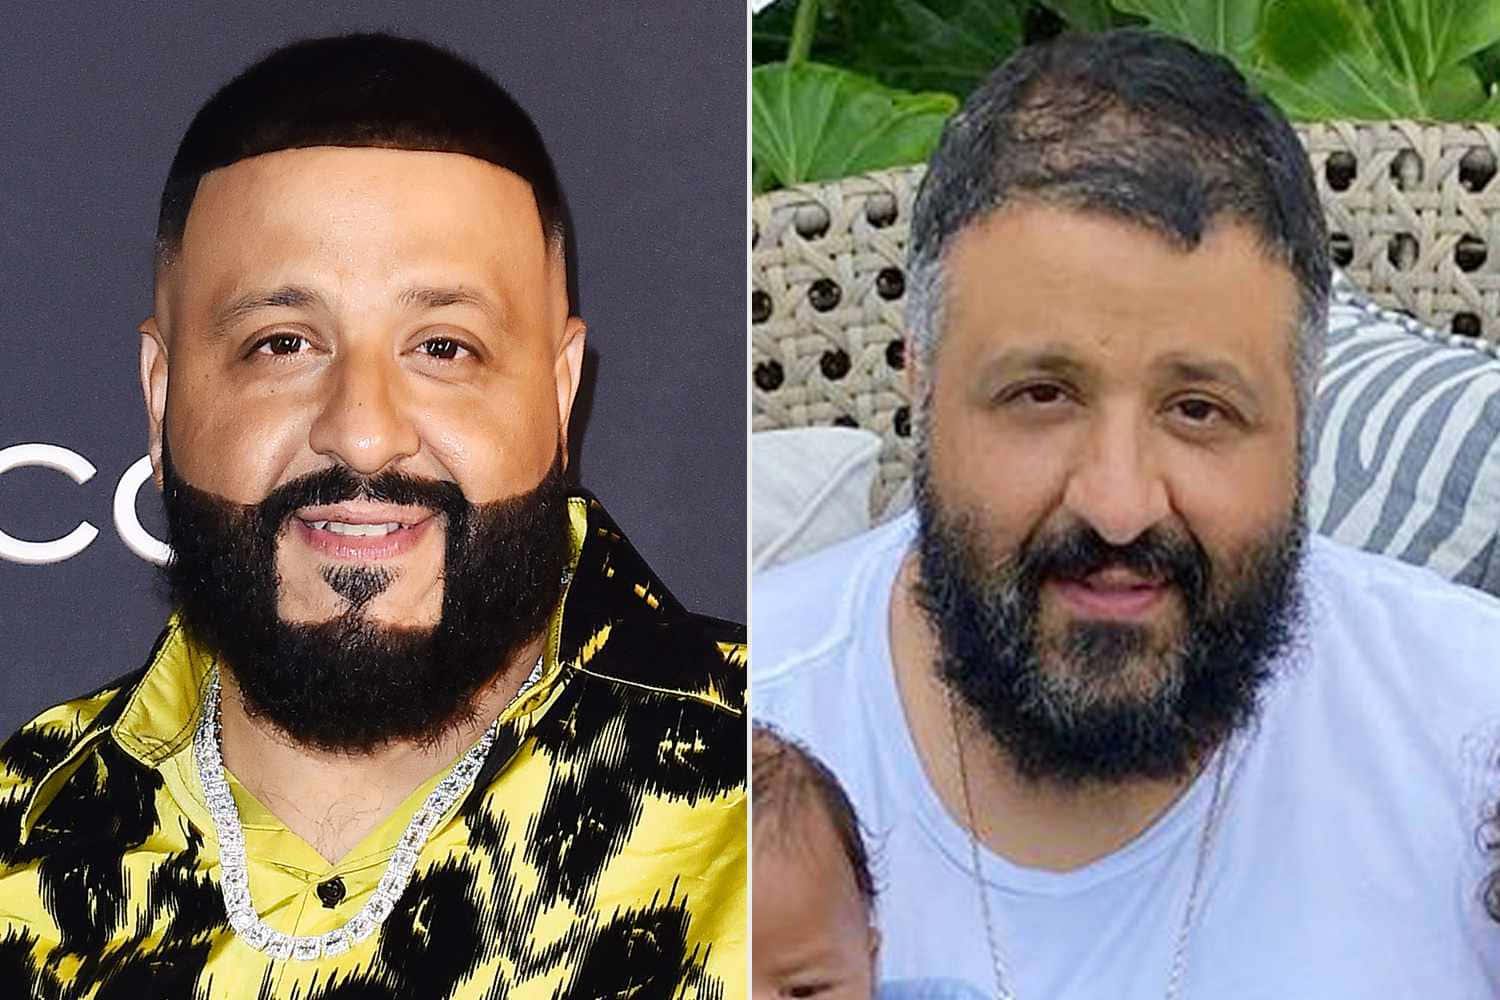 Dj Khaled And A Man With A Beard